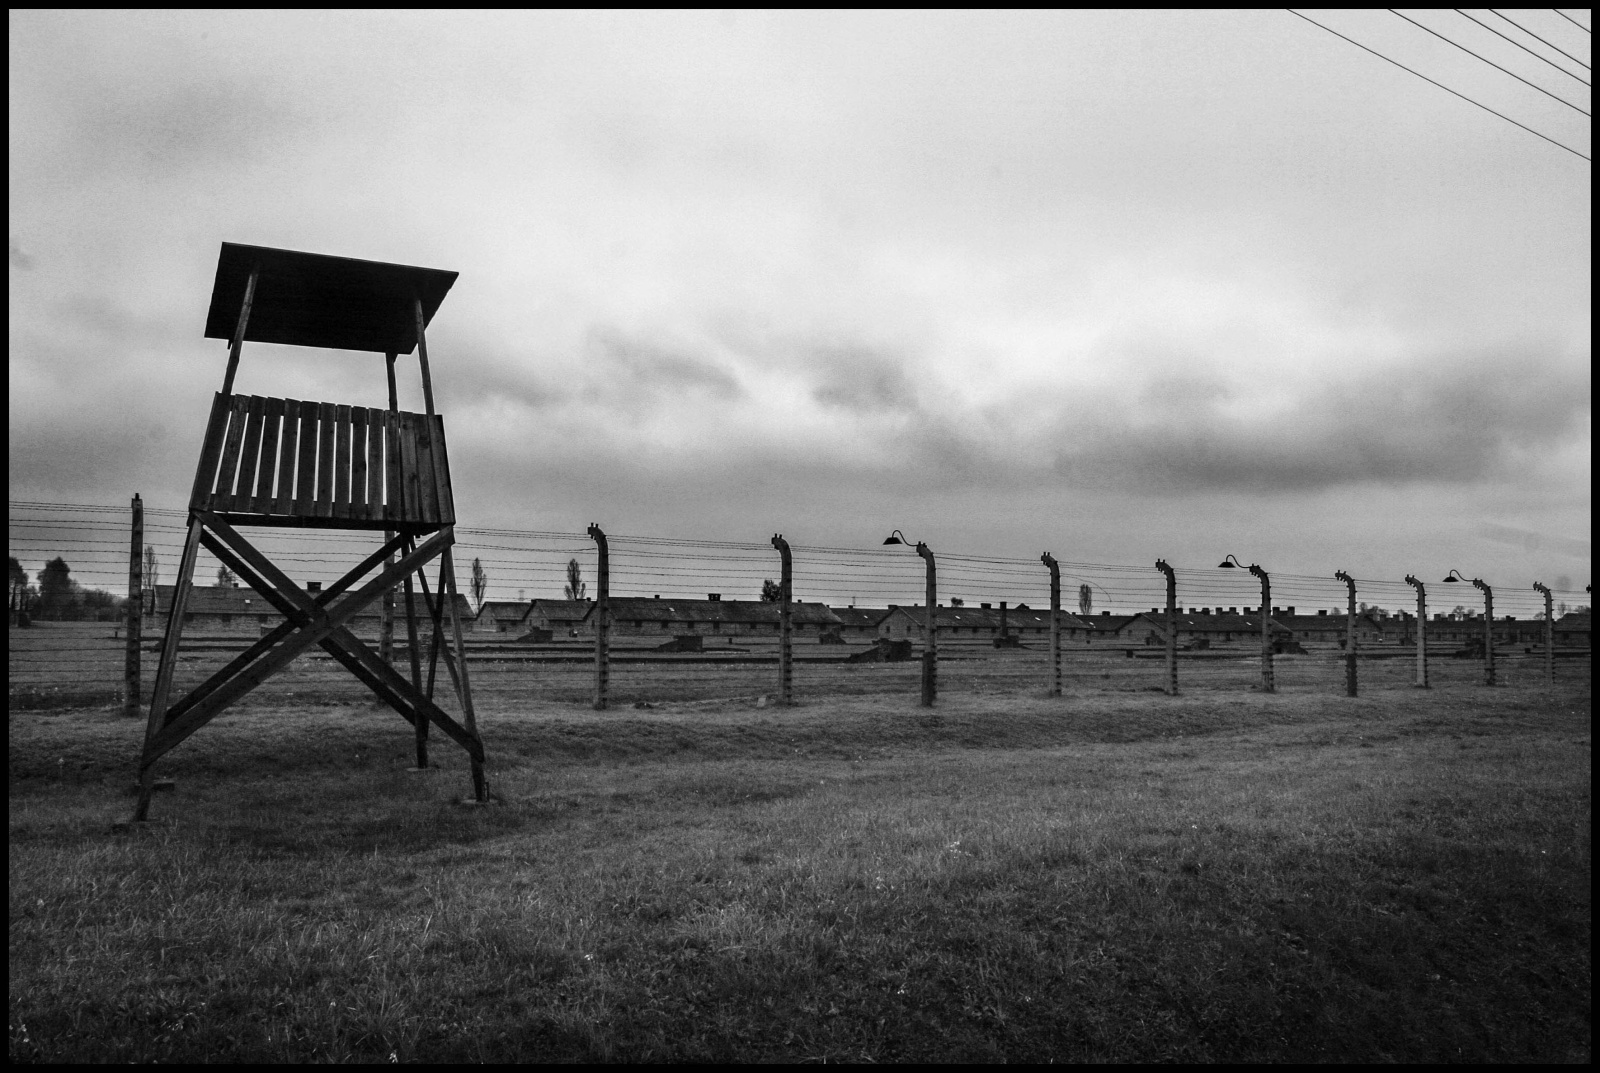 Auschwitz II (Birkenau) Vernichtungslager (campo di sterminio). Era l'immenso lager nel quale persero la vita oltre un milione e centomila persone, in stragrande maggioranza ebrei, russi, polacchi, prigionieri di guerra, omosessuali, oppositori politici, testimoni di Geova e zingari. Dopo l'arrivo dei prigionieri, questi venivano selezionati e quelli inabili al lavoro venivano condotti  alle camere a gas con lo scopo di essere uccisi. Le torrette delle sentinelle all'esterno del campo.